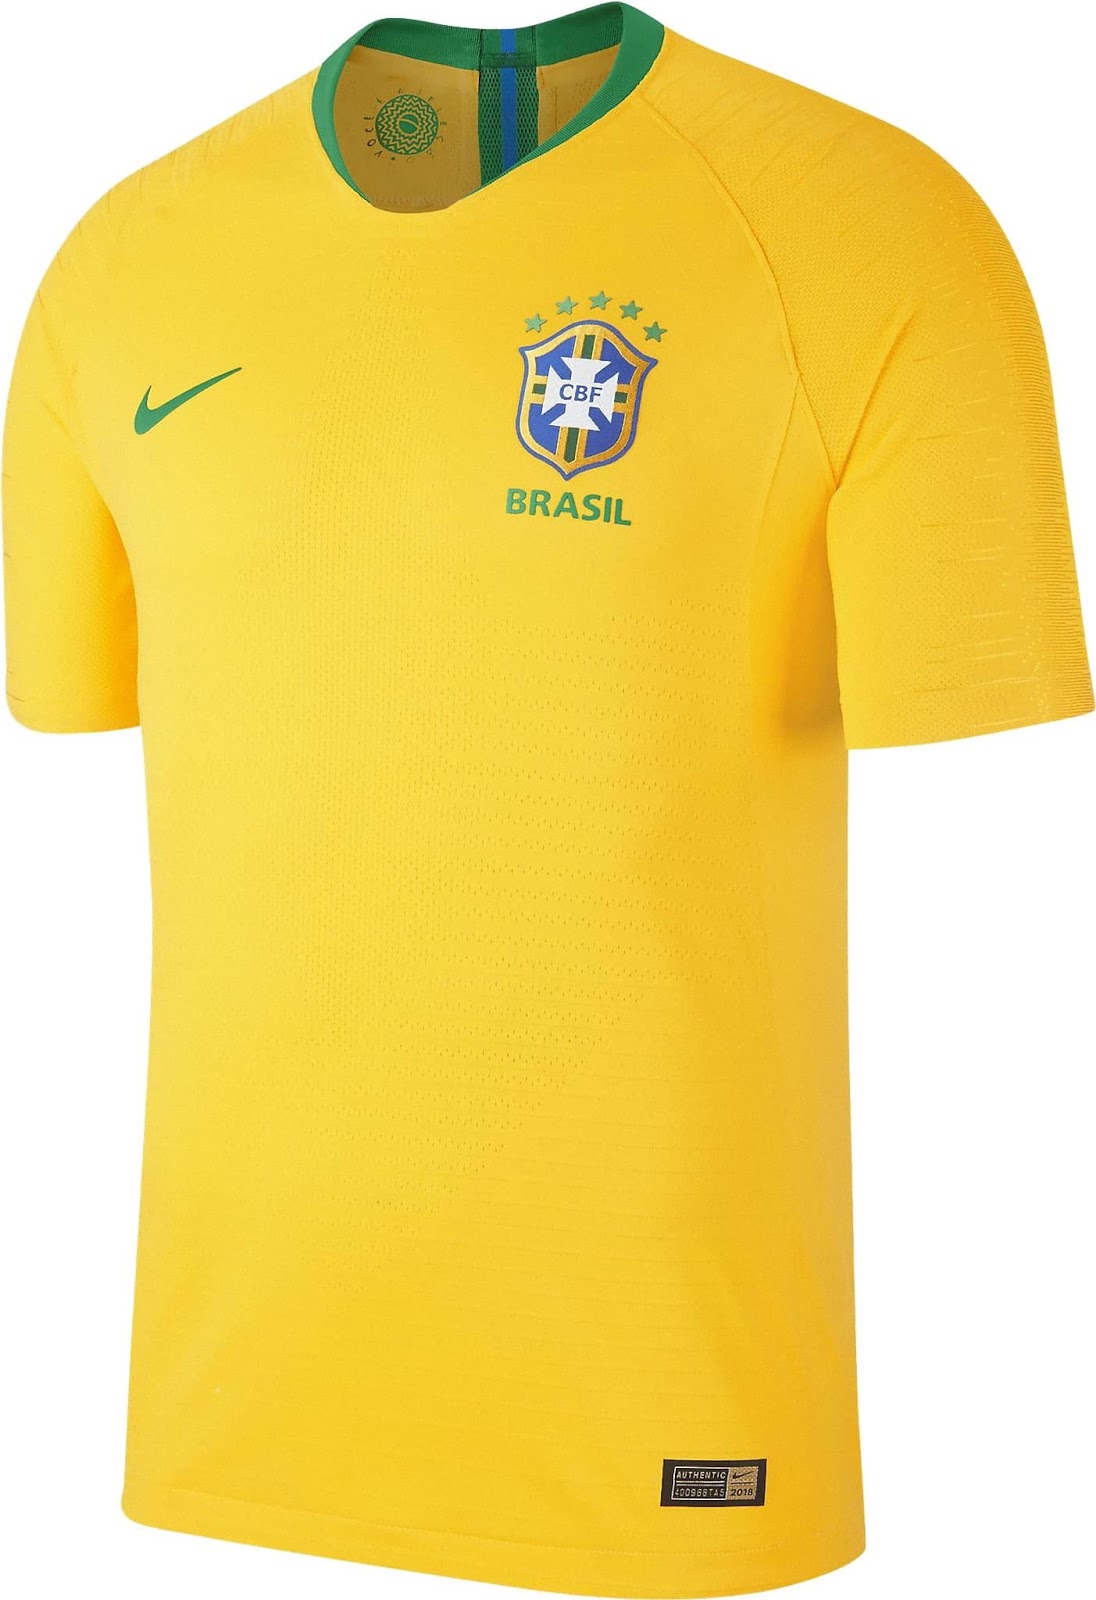 ブラジル代表 2018 ワールドカップユニフォーム - ユニ11